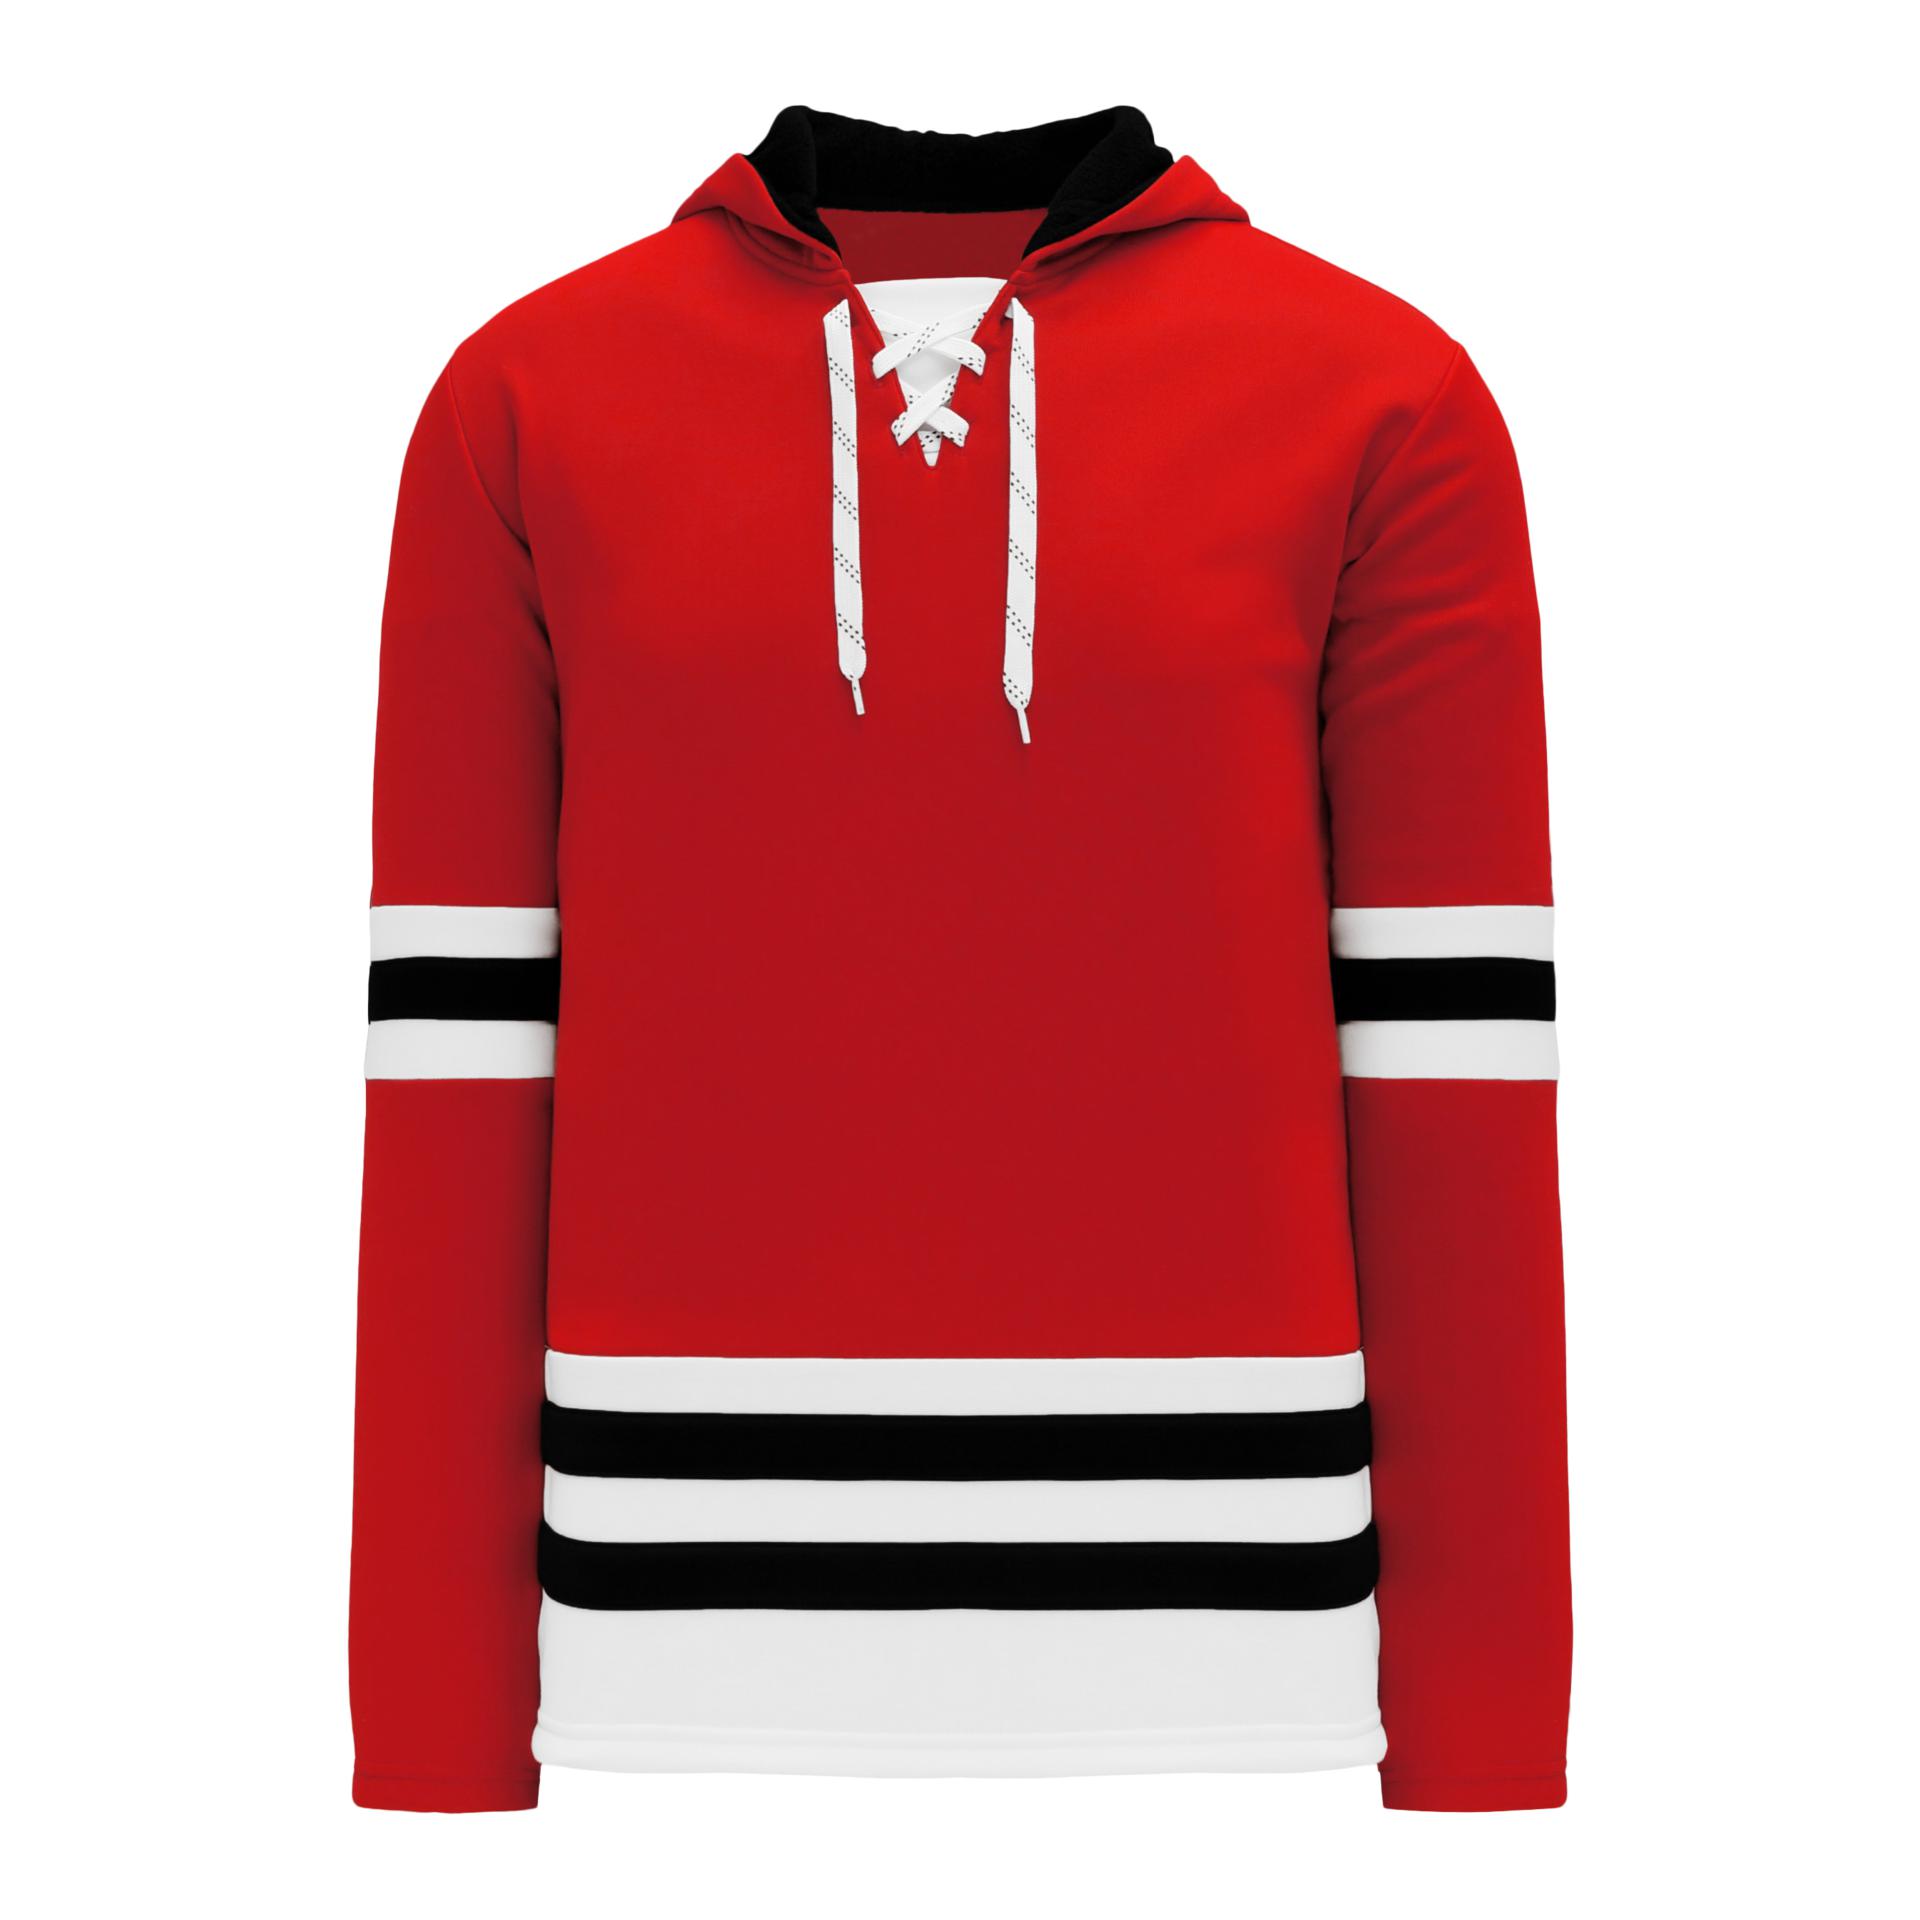 Chicago Blackhawks Store I Like Hockey Shirt, hoodie, sweater and